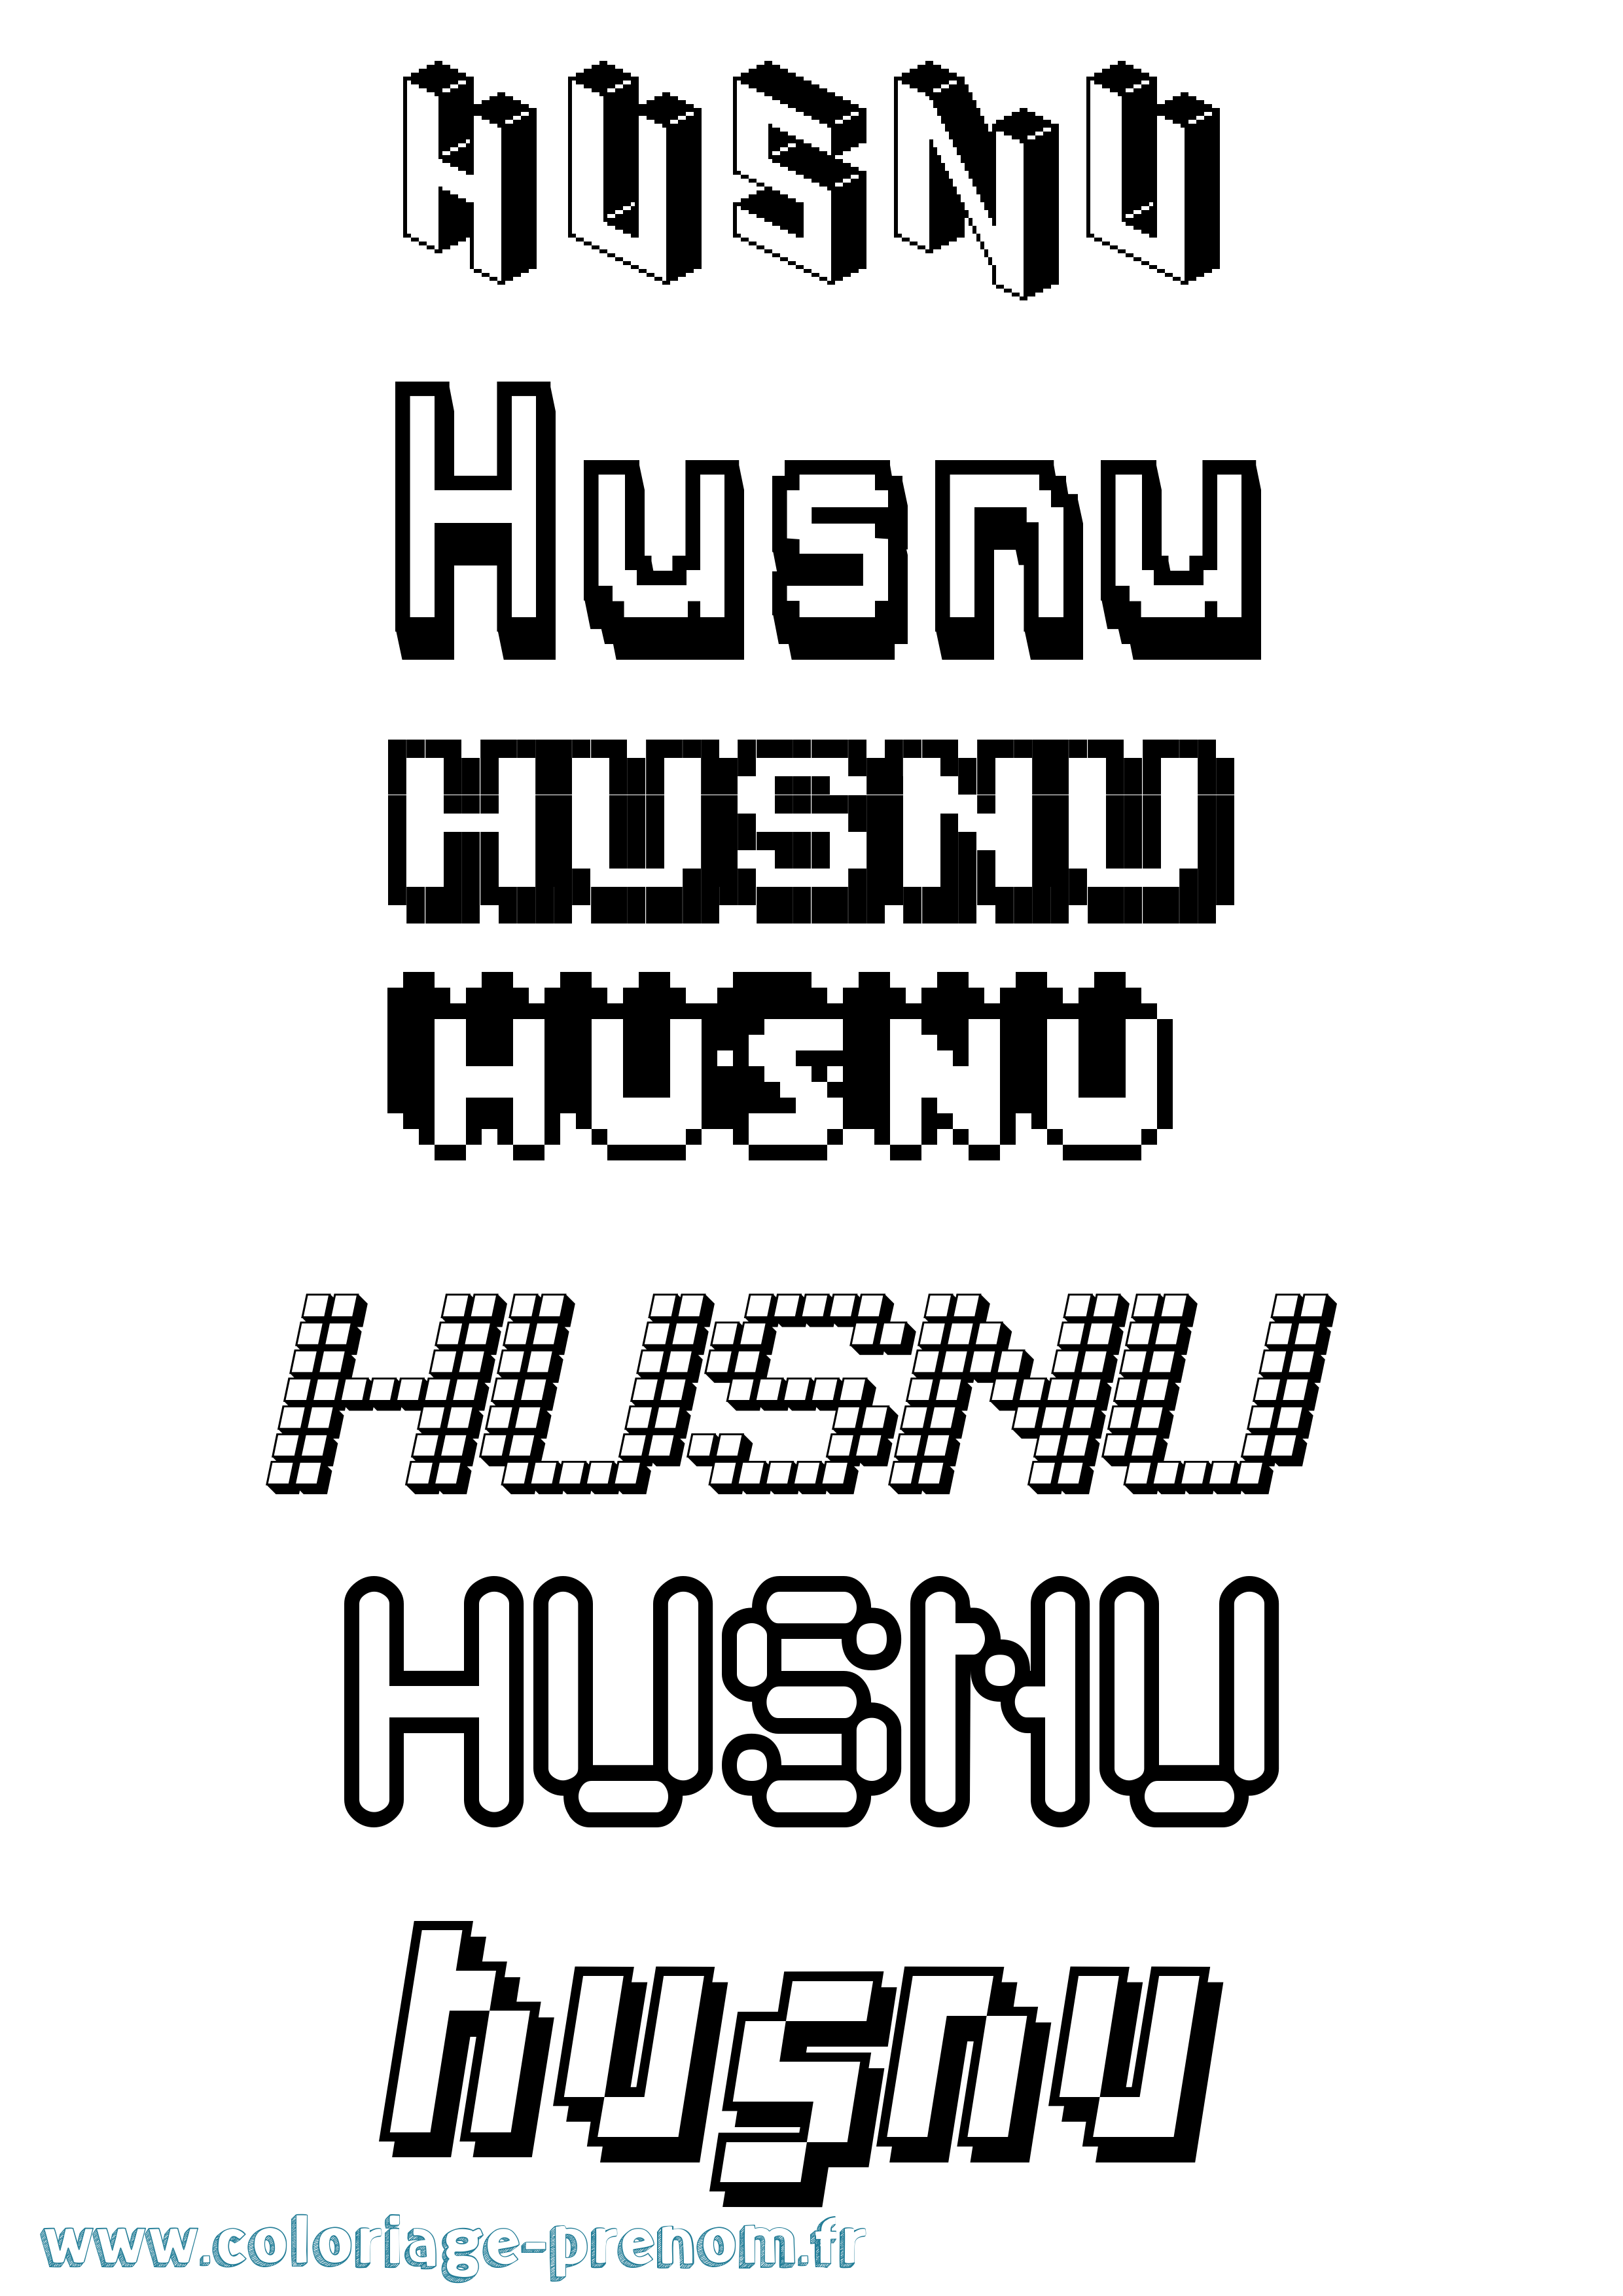 Coloriage prénom Husnu Pixel